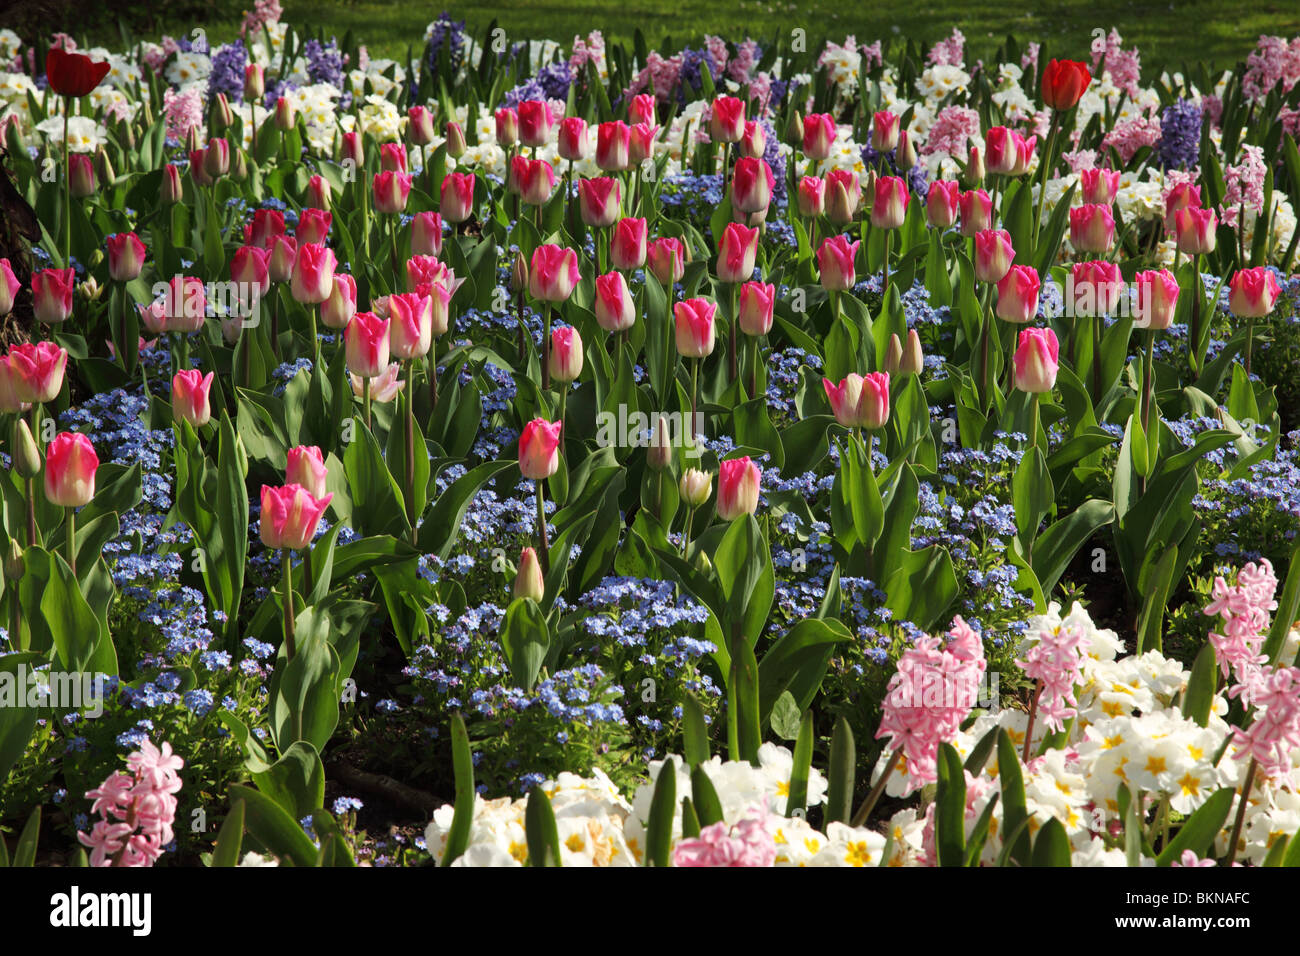 Nahaufnahme eines bunten Blumenbeet mit Frühlingsblumen - Tulpen, vergessen Sie mir die Nots und Hyazinthe, die alle in einem Frühlingsgarten in Großbritannien blühen Stockfoto